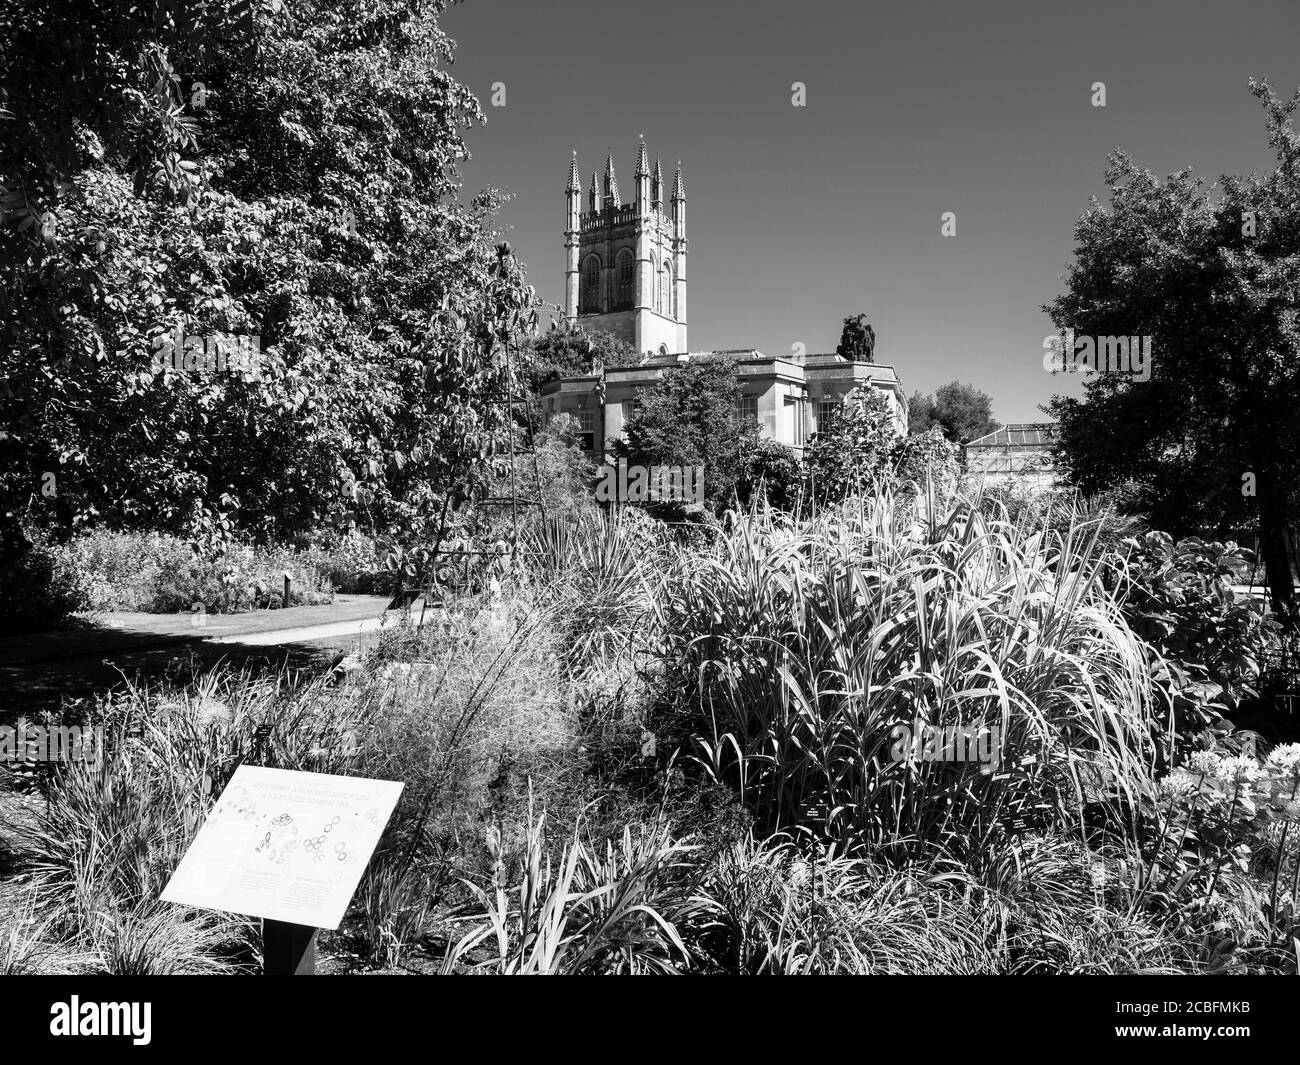 Paysage noir et blanc de la tour de la Madeleine, avec les jardins botaniques de l'Université d'Oxford, Oxford, Oxfordshire, Angleterre, Royaume-Uni, GB. Banque D'Images